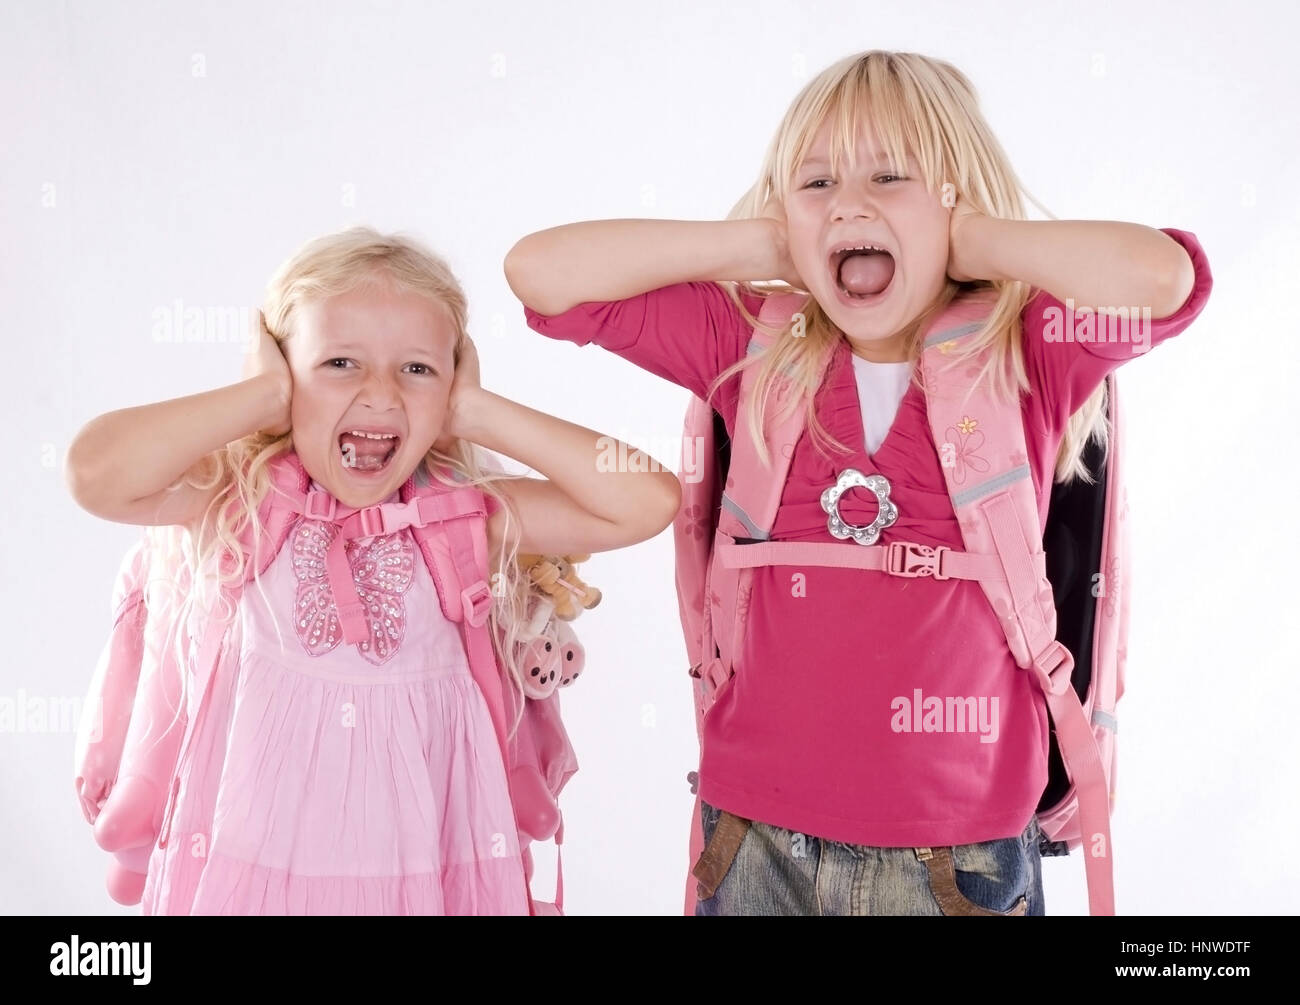 Model release, Zwei Schulanfaengerinnen halten sich die Ohren zu und schreien - two school girls screaming Stock Photo